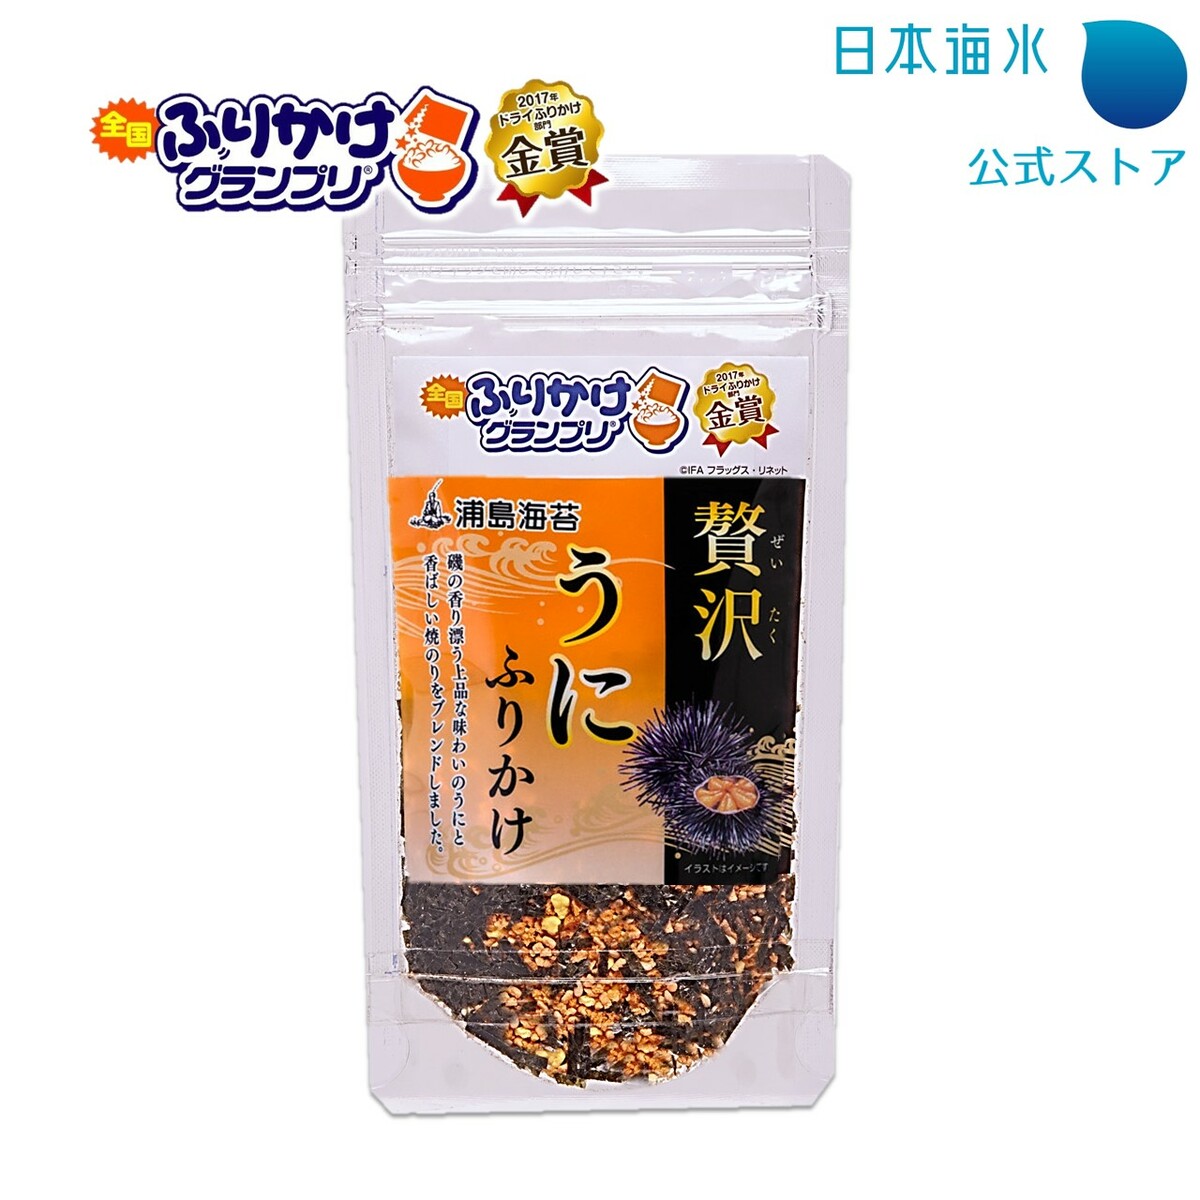 Premium Sea urchin Furikake (Rice seasoning) 35g